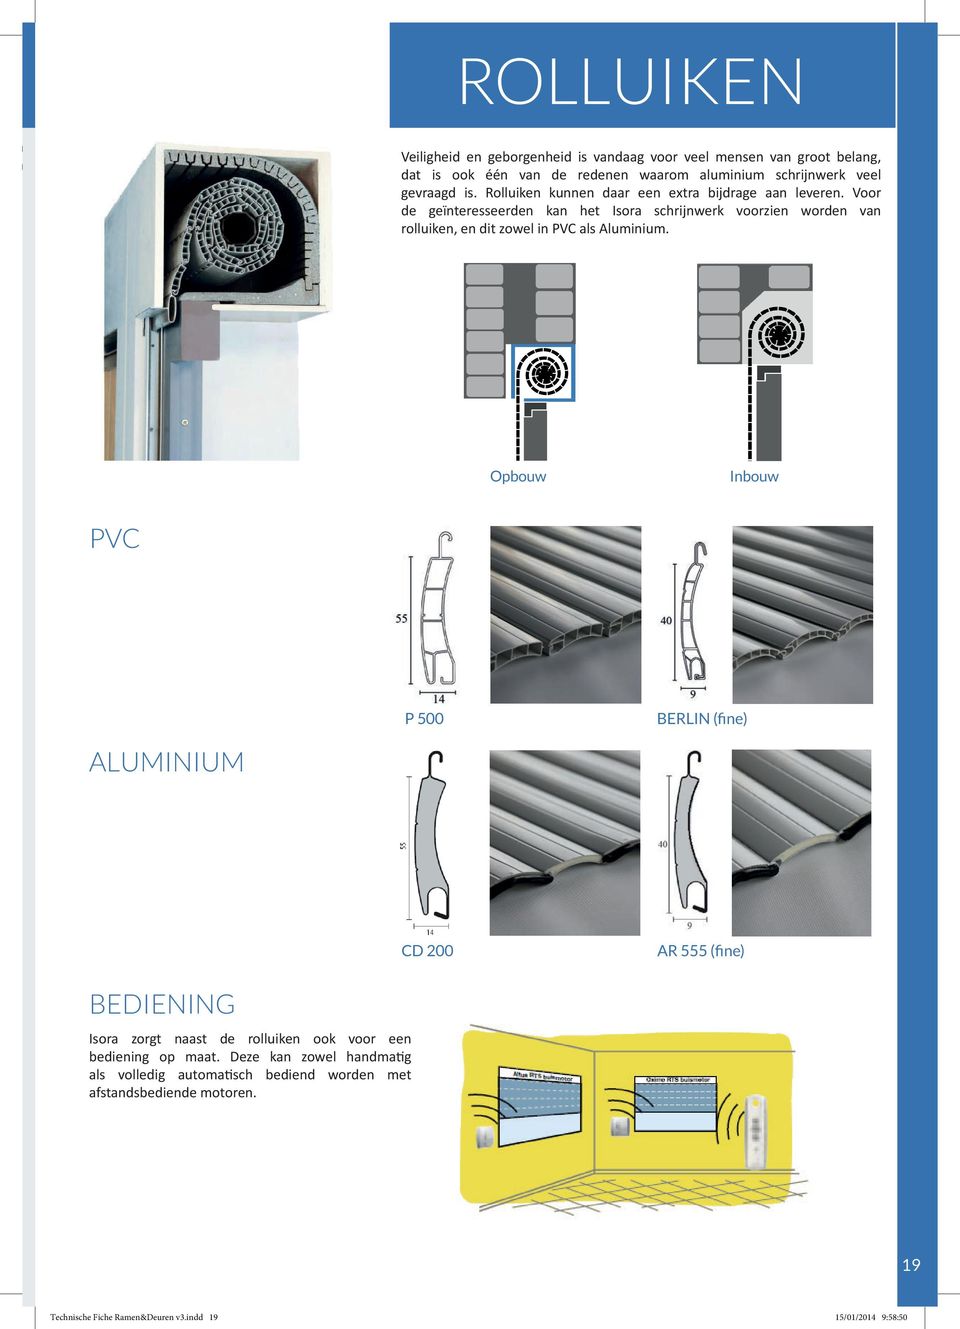 Voor de geïnteresseerden kan het Isora schrijnwerk voorzien worden van rolluiken, en dit zowel in PVC als Aluminium.